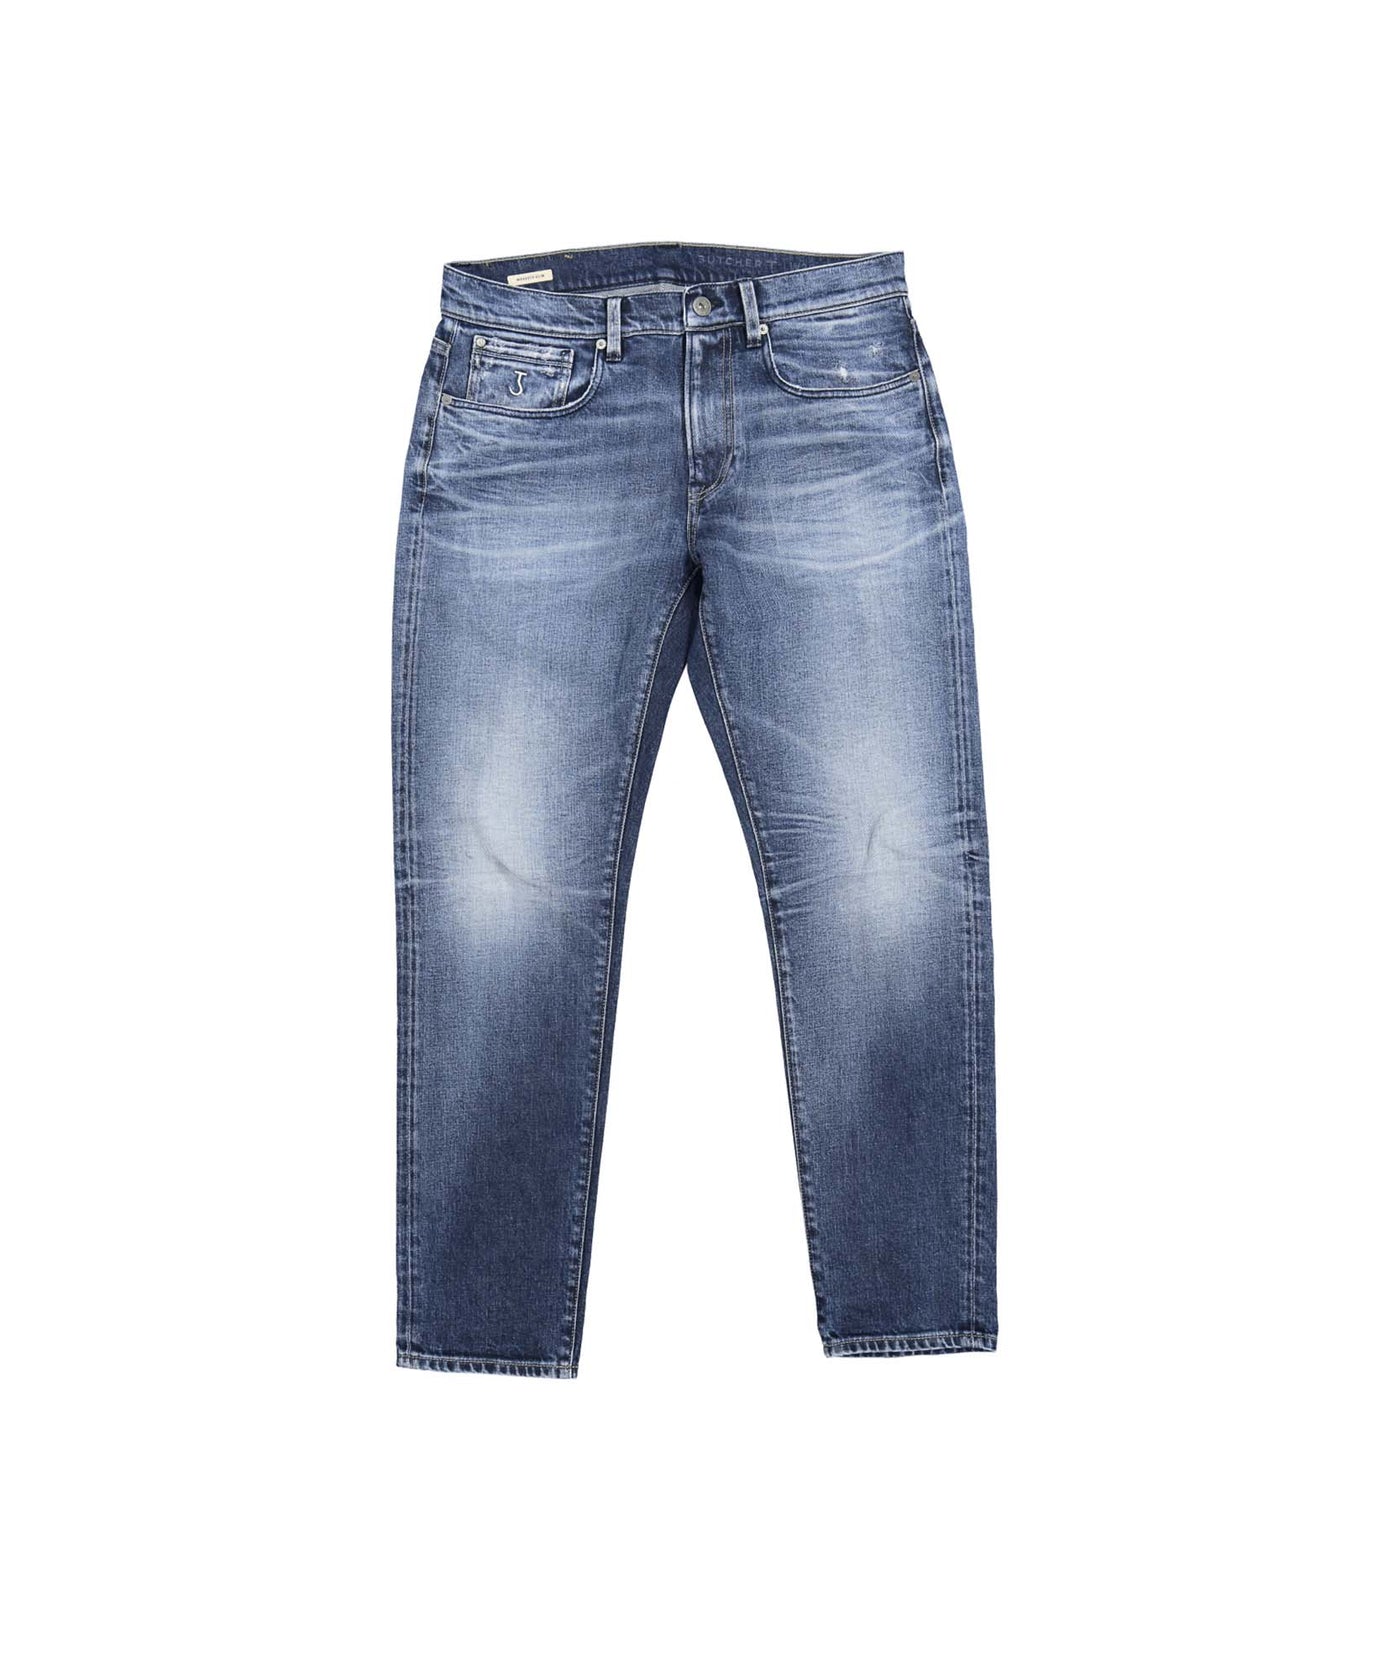 Lichtblauwe rechtuitlopende jeans van het merk Butcher of Blue